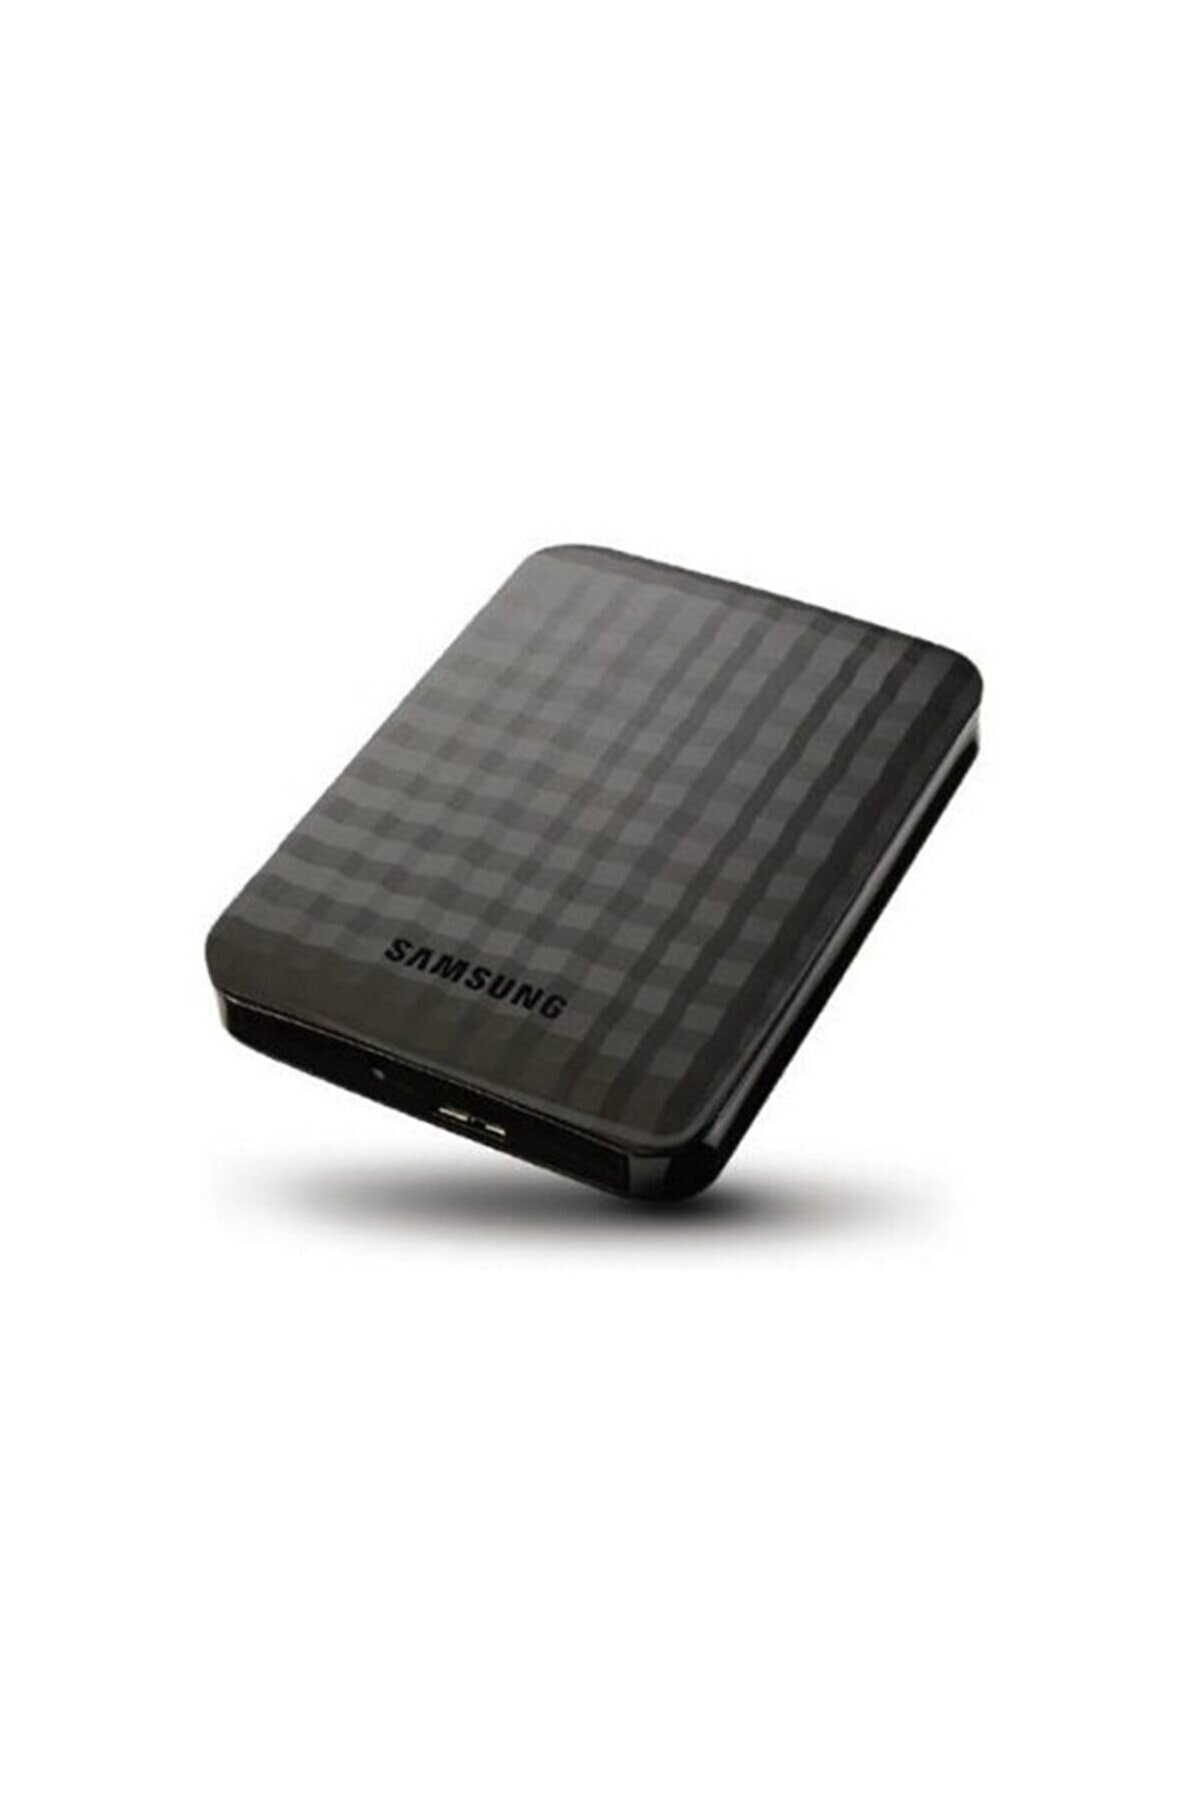 Samsung M3 500gb 2.5' Usb 3.0 Taşınabilir Disk (stshx-m500tcb) Eba Tv